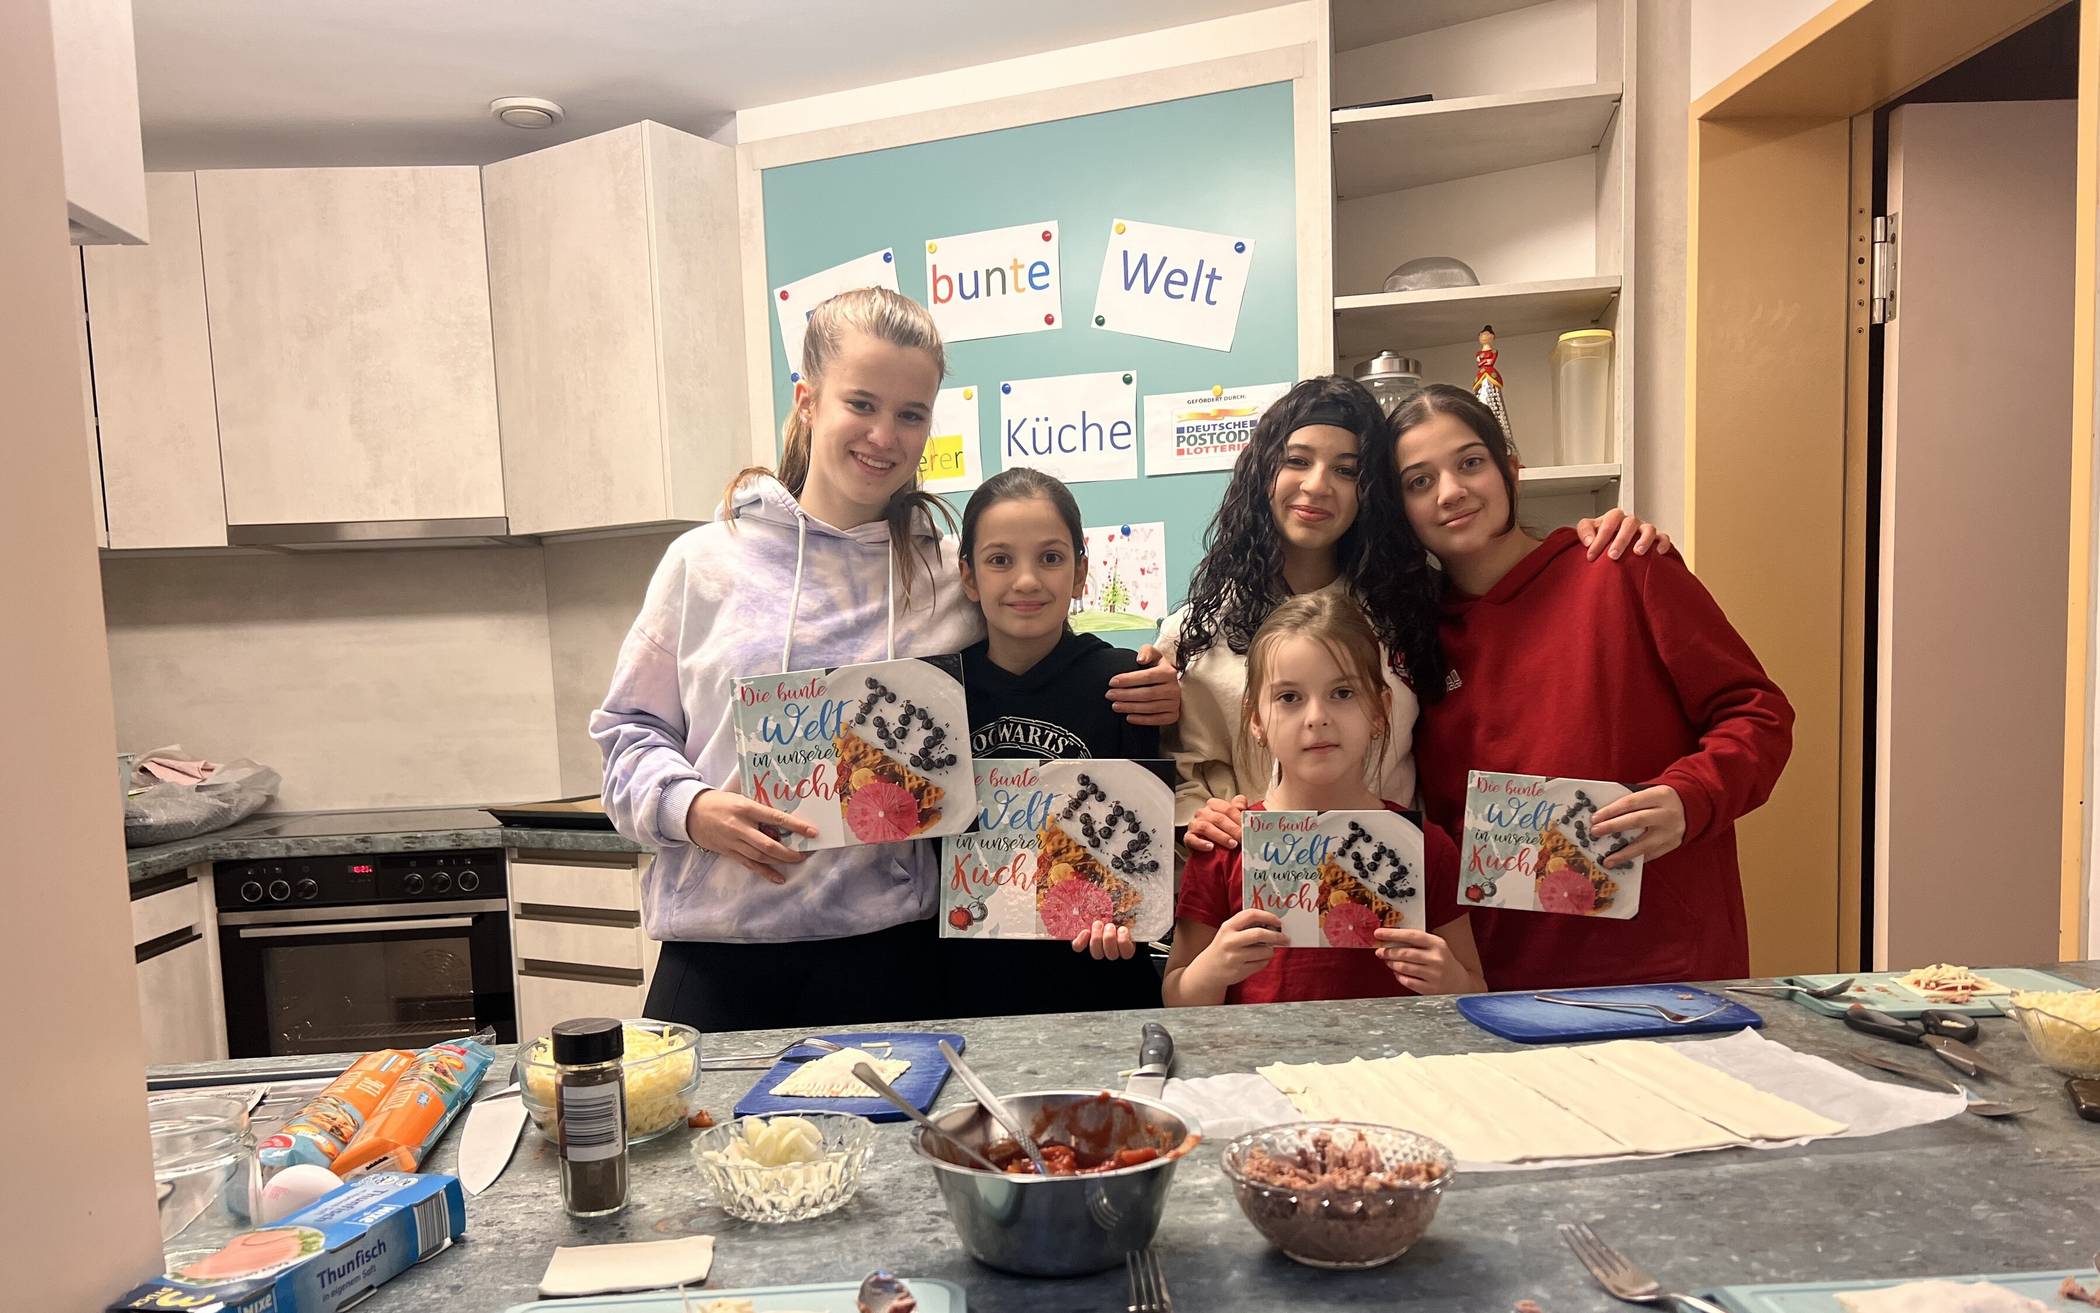  Jungköche im Einsatz: Seit 2021 gibt es den Kochclub im Kinder- und Jugendzentrum des TSV Hochdahl. Nun gibt es sogar ein eigenes Kochbuch, welches die jungen Damen hier stolz präsentieren. 